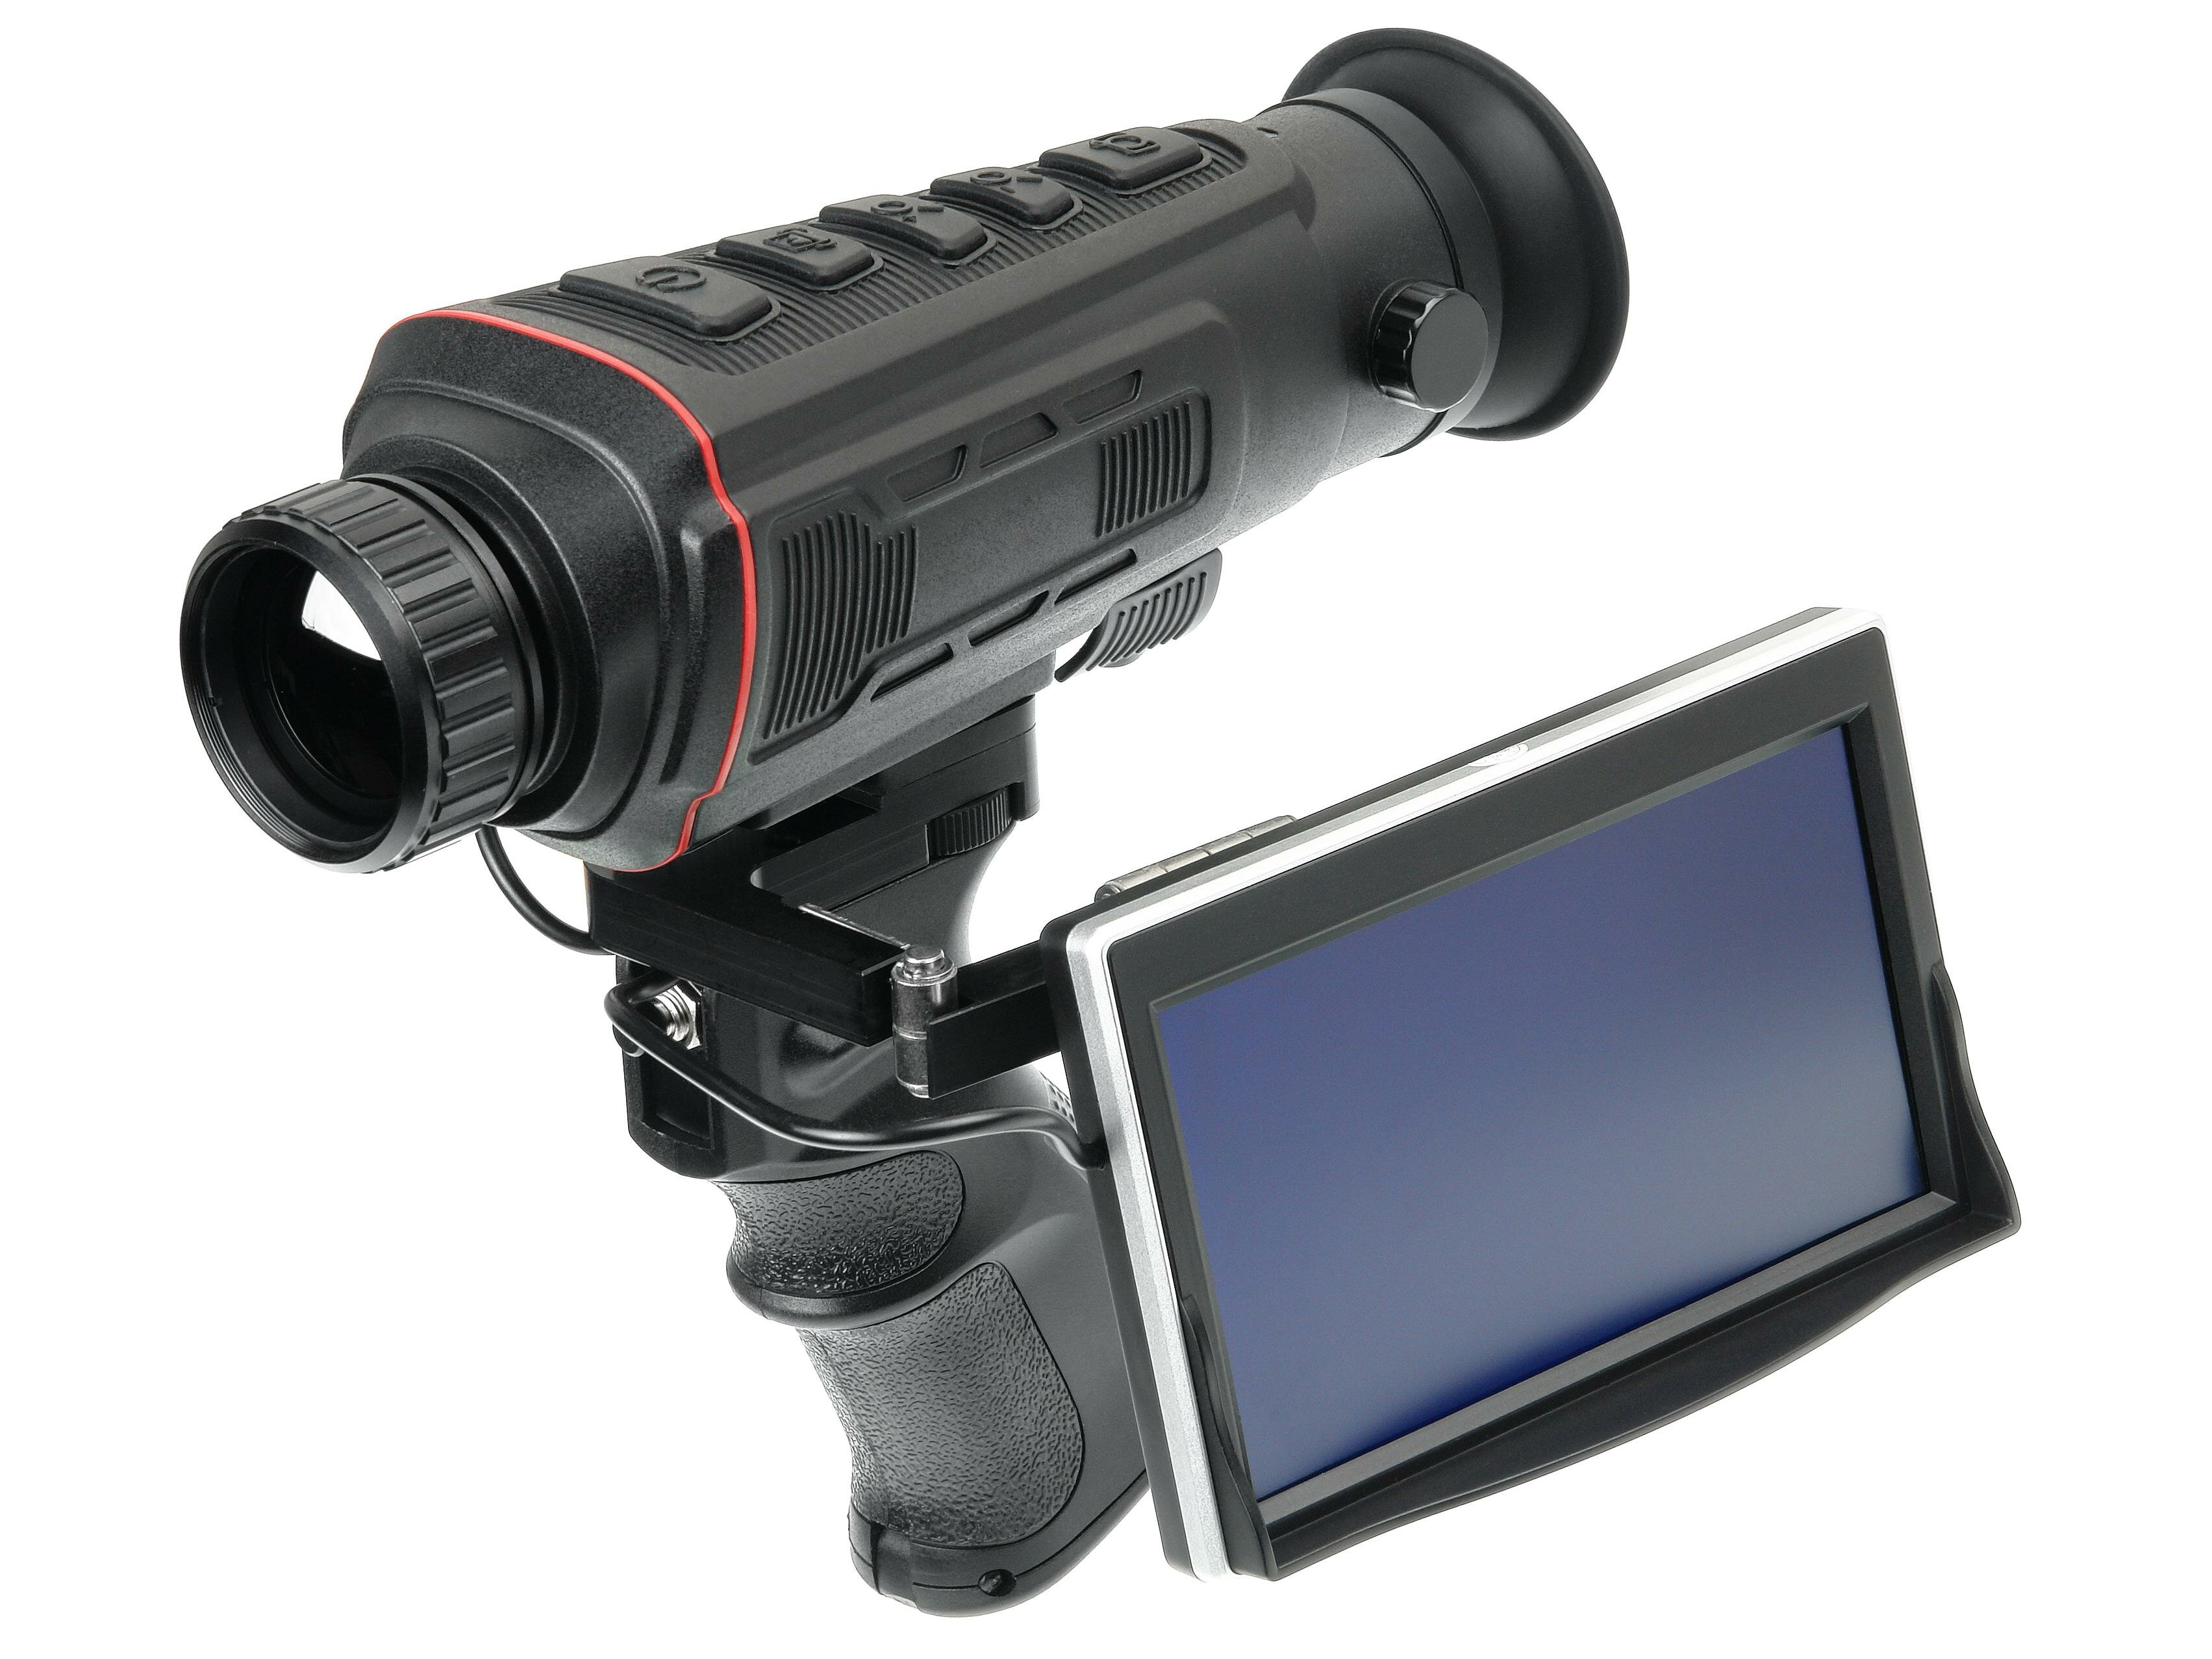 Model: HT A4 (I30328N) тепловизионный монокуляр для охоты и наблюдения с внешний экраном - формирует точное тепловое изображение